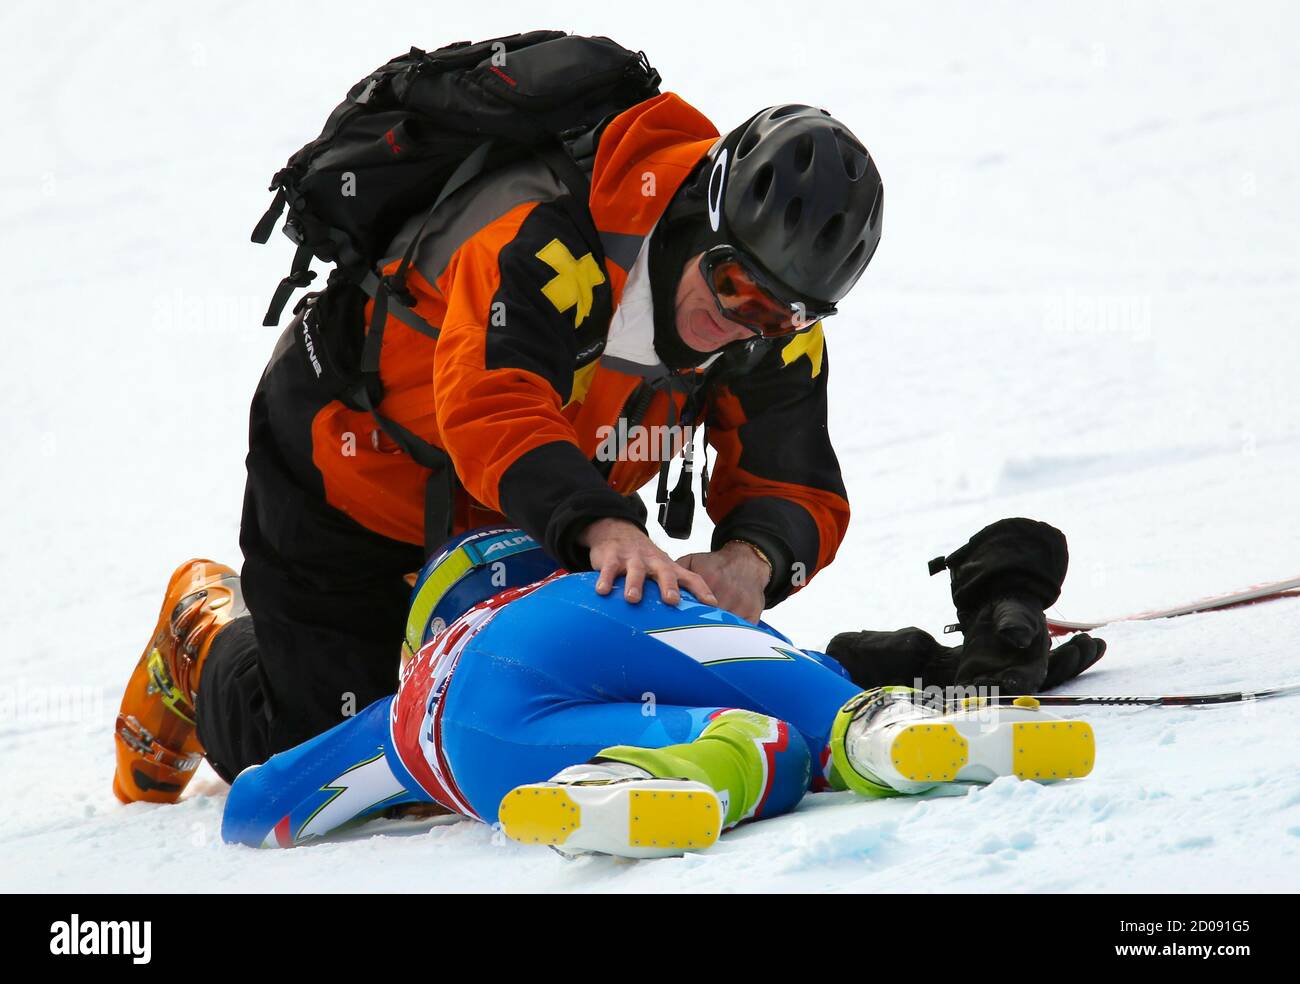 Marusa Ferk di Slovenia è frequentato dopo schiantarsi durante gli allenamenti di sci alpino per la Coppa del mondo delle Donne Downhill nel Lago Louise, Alberta 27 novembre 2012. REUTERS/Mike Blake (CANADA - Tags: SCI SPORTIVO) Foto Stock